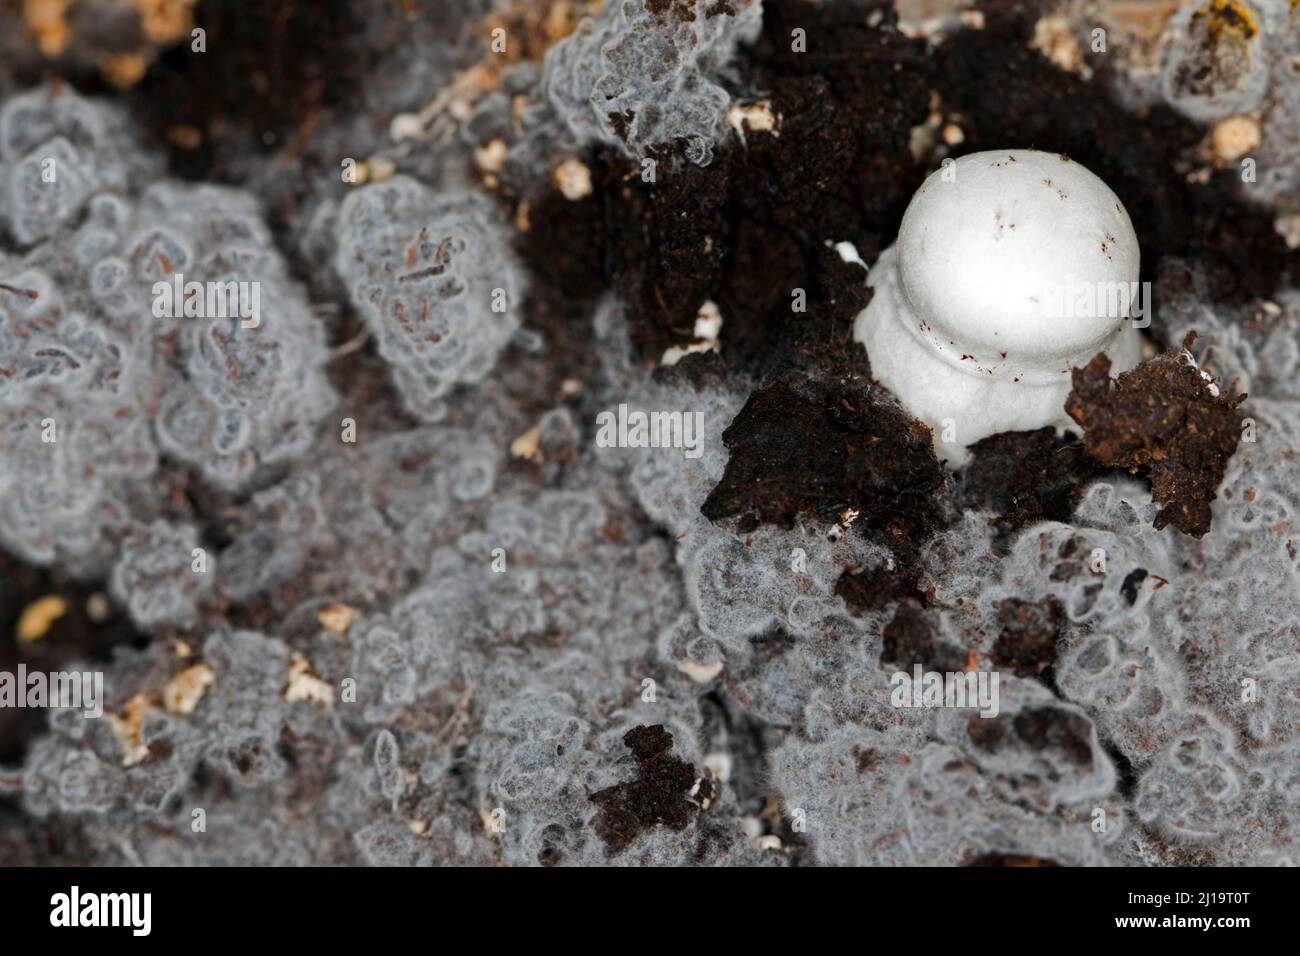 White horse mushroom (Agaricus arvensis) on the mushroom mycelium Stock Photo